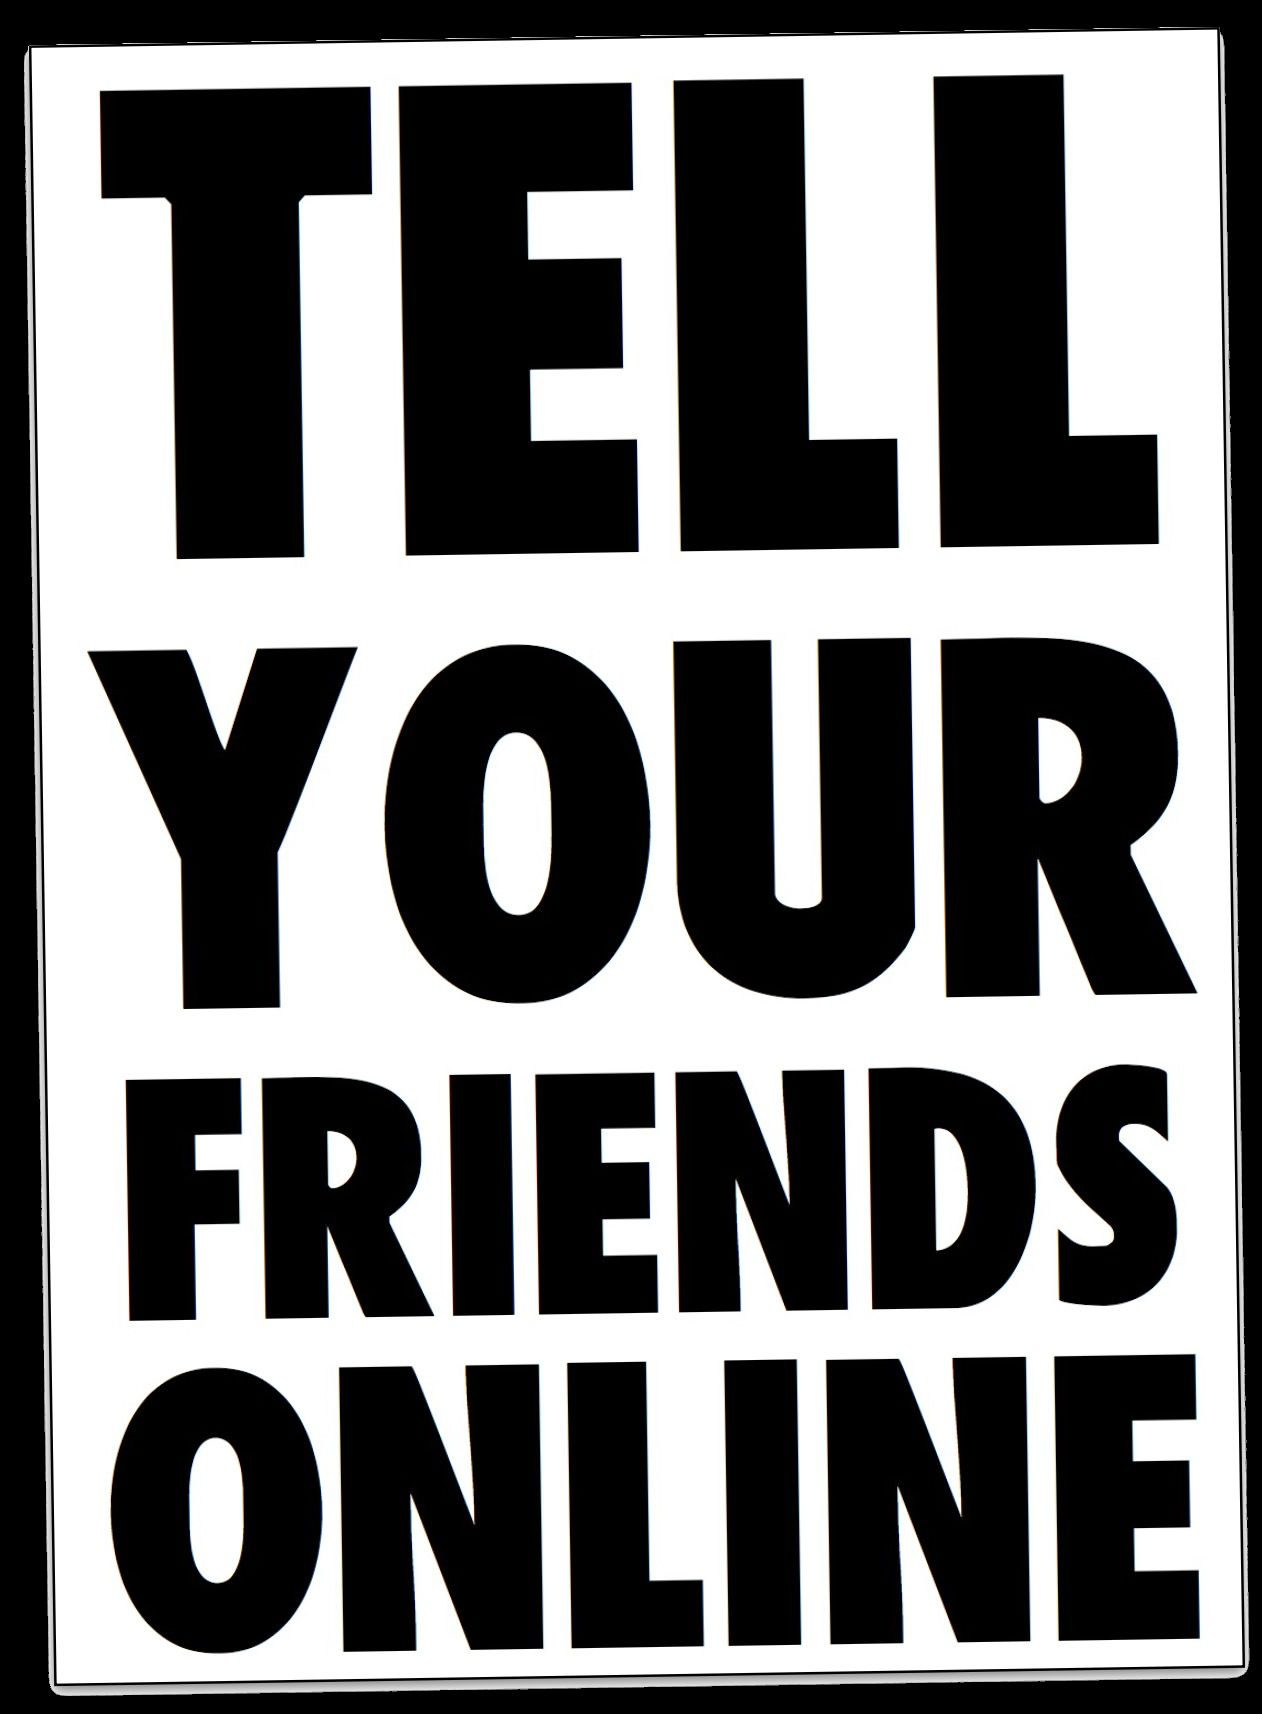 www.tellyourfriends.online